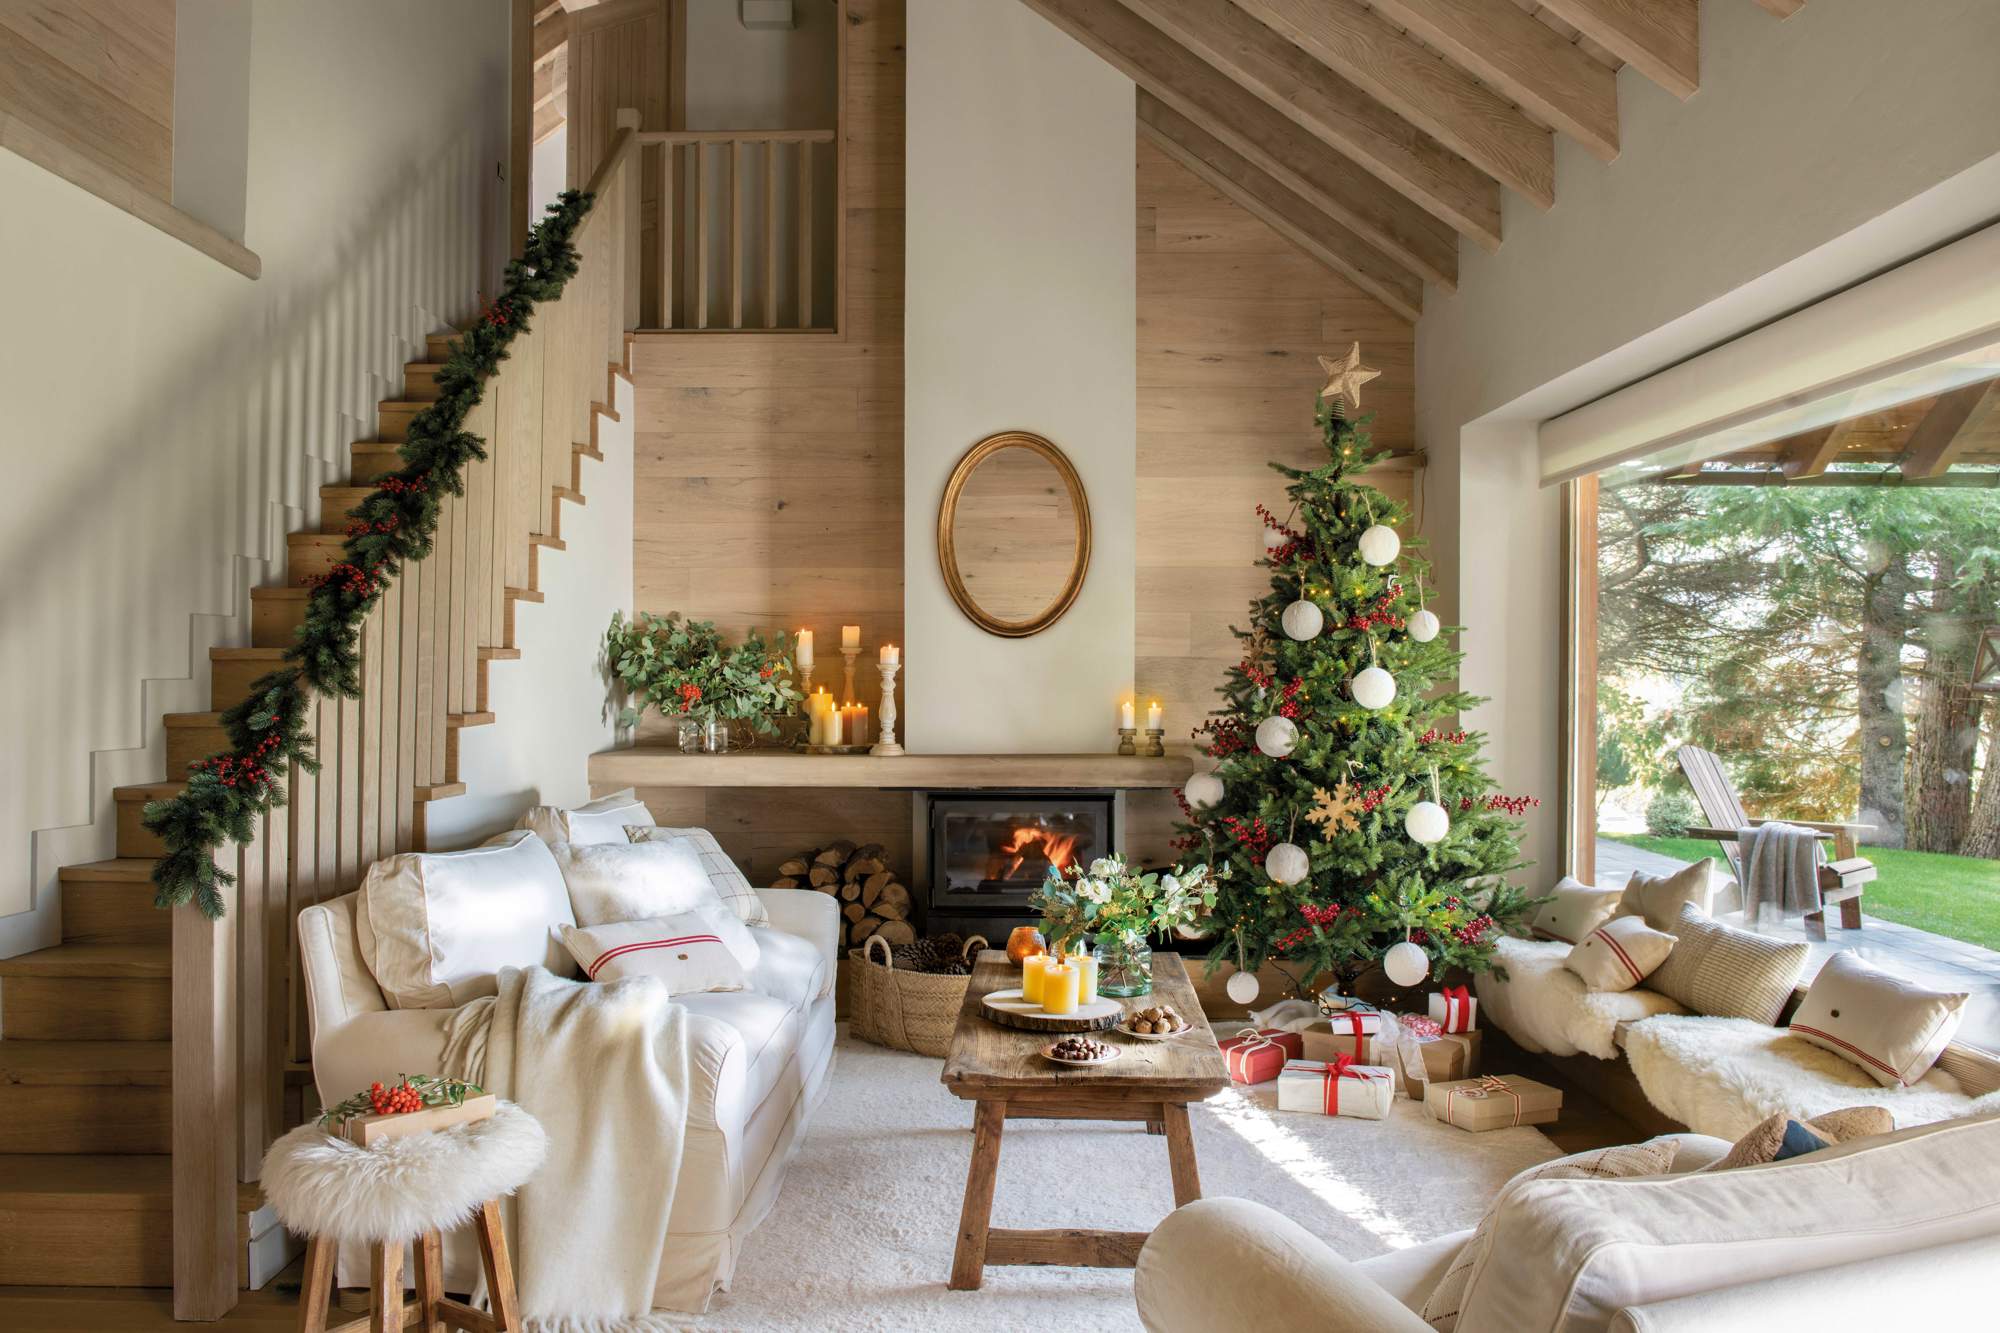 Salón navideño con chimenea, árbol y escalera decorada